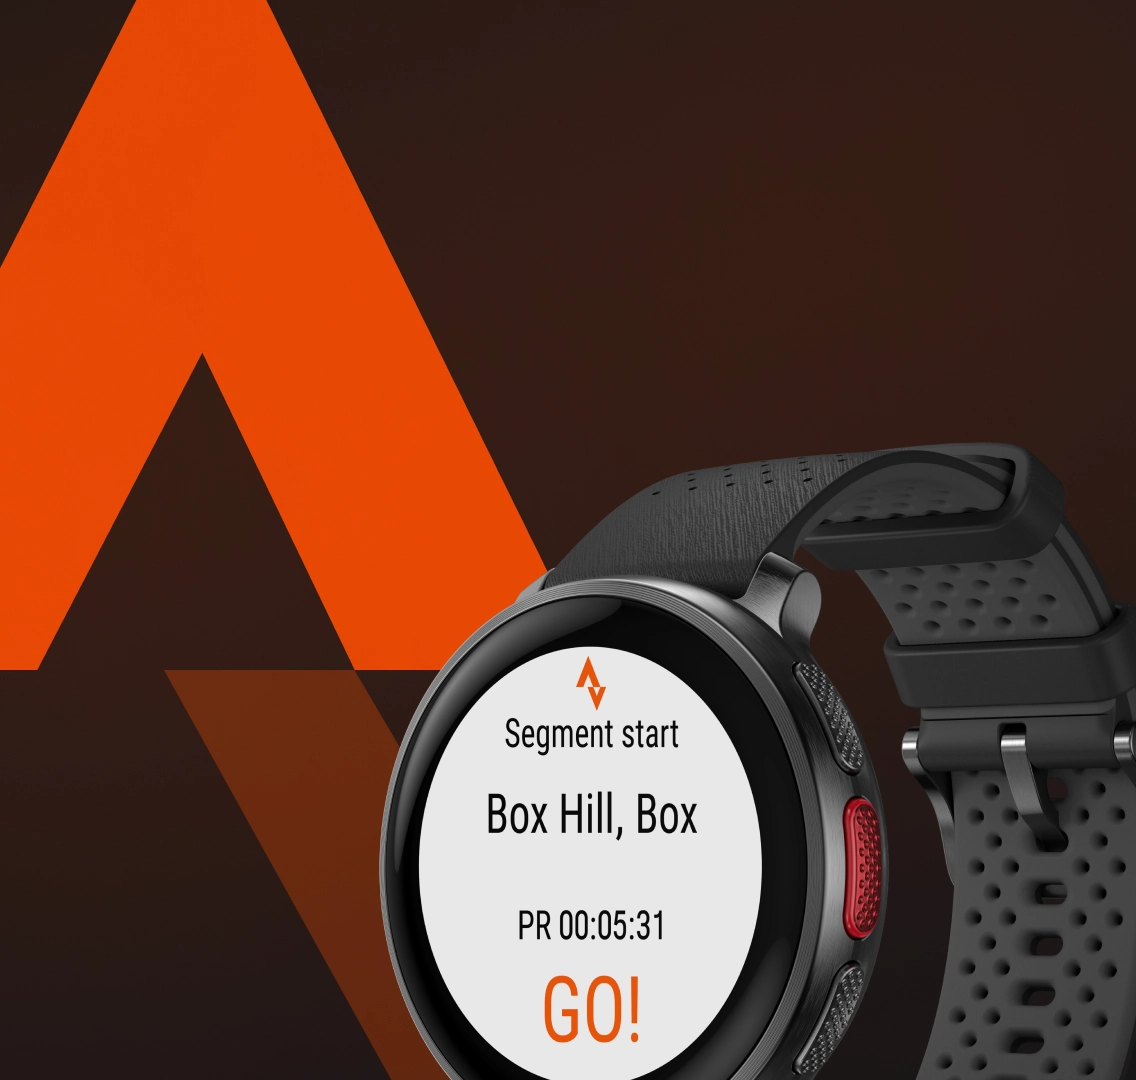 Polar Vantage V - Reloj prémium con GPS para entrenamiento de deportes y  triatlón (monitor de ritmo cardíaco, running, impermeable), talla única